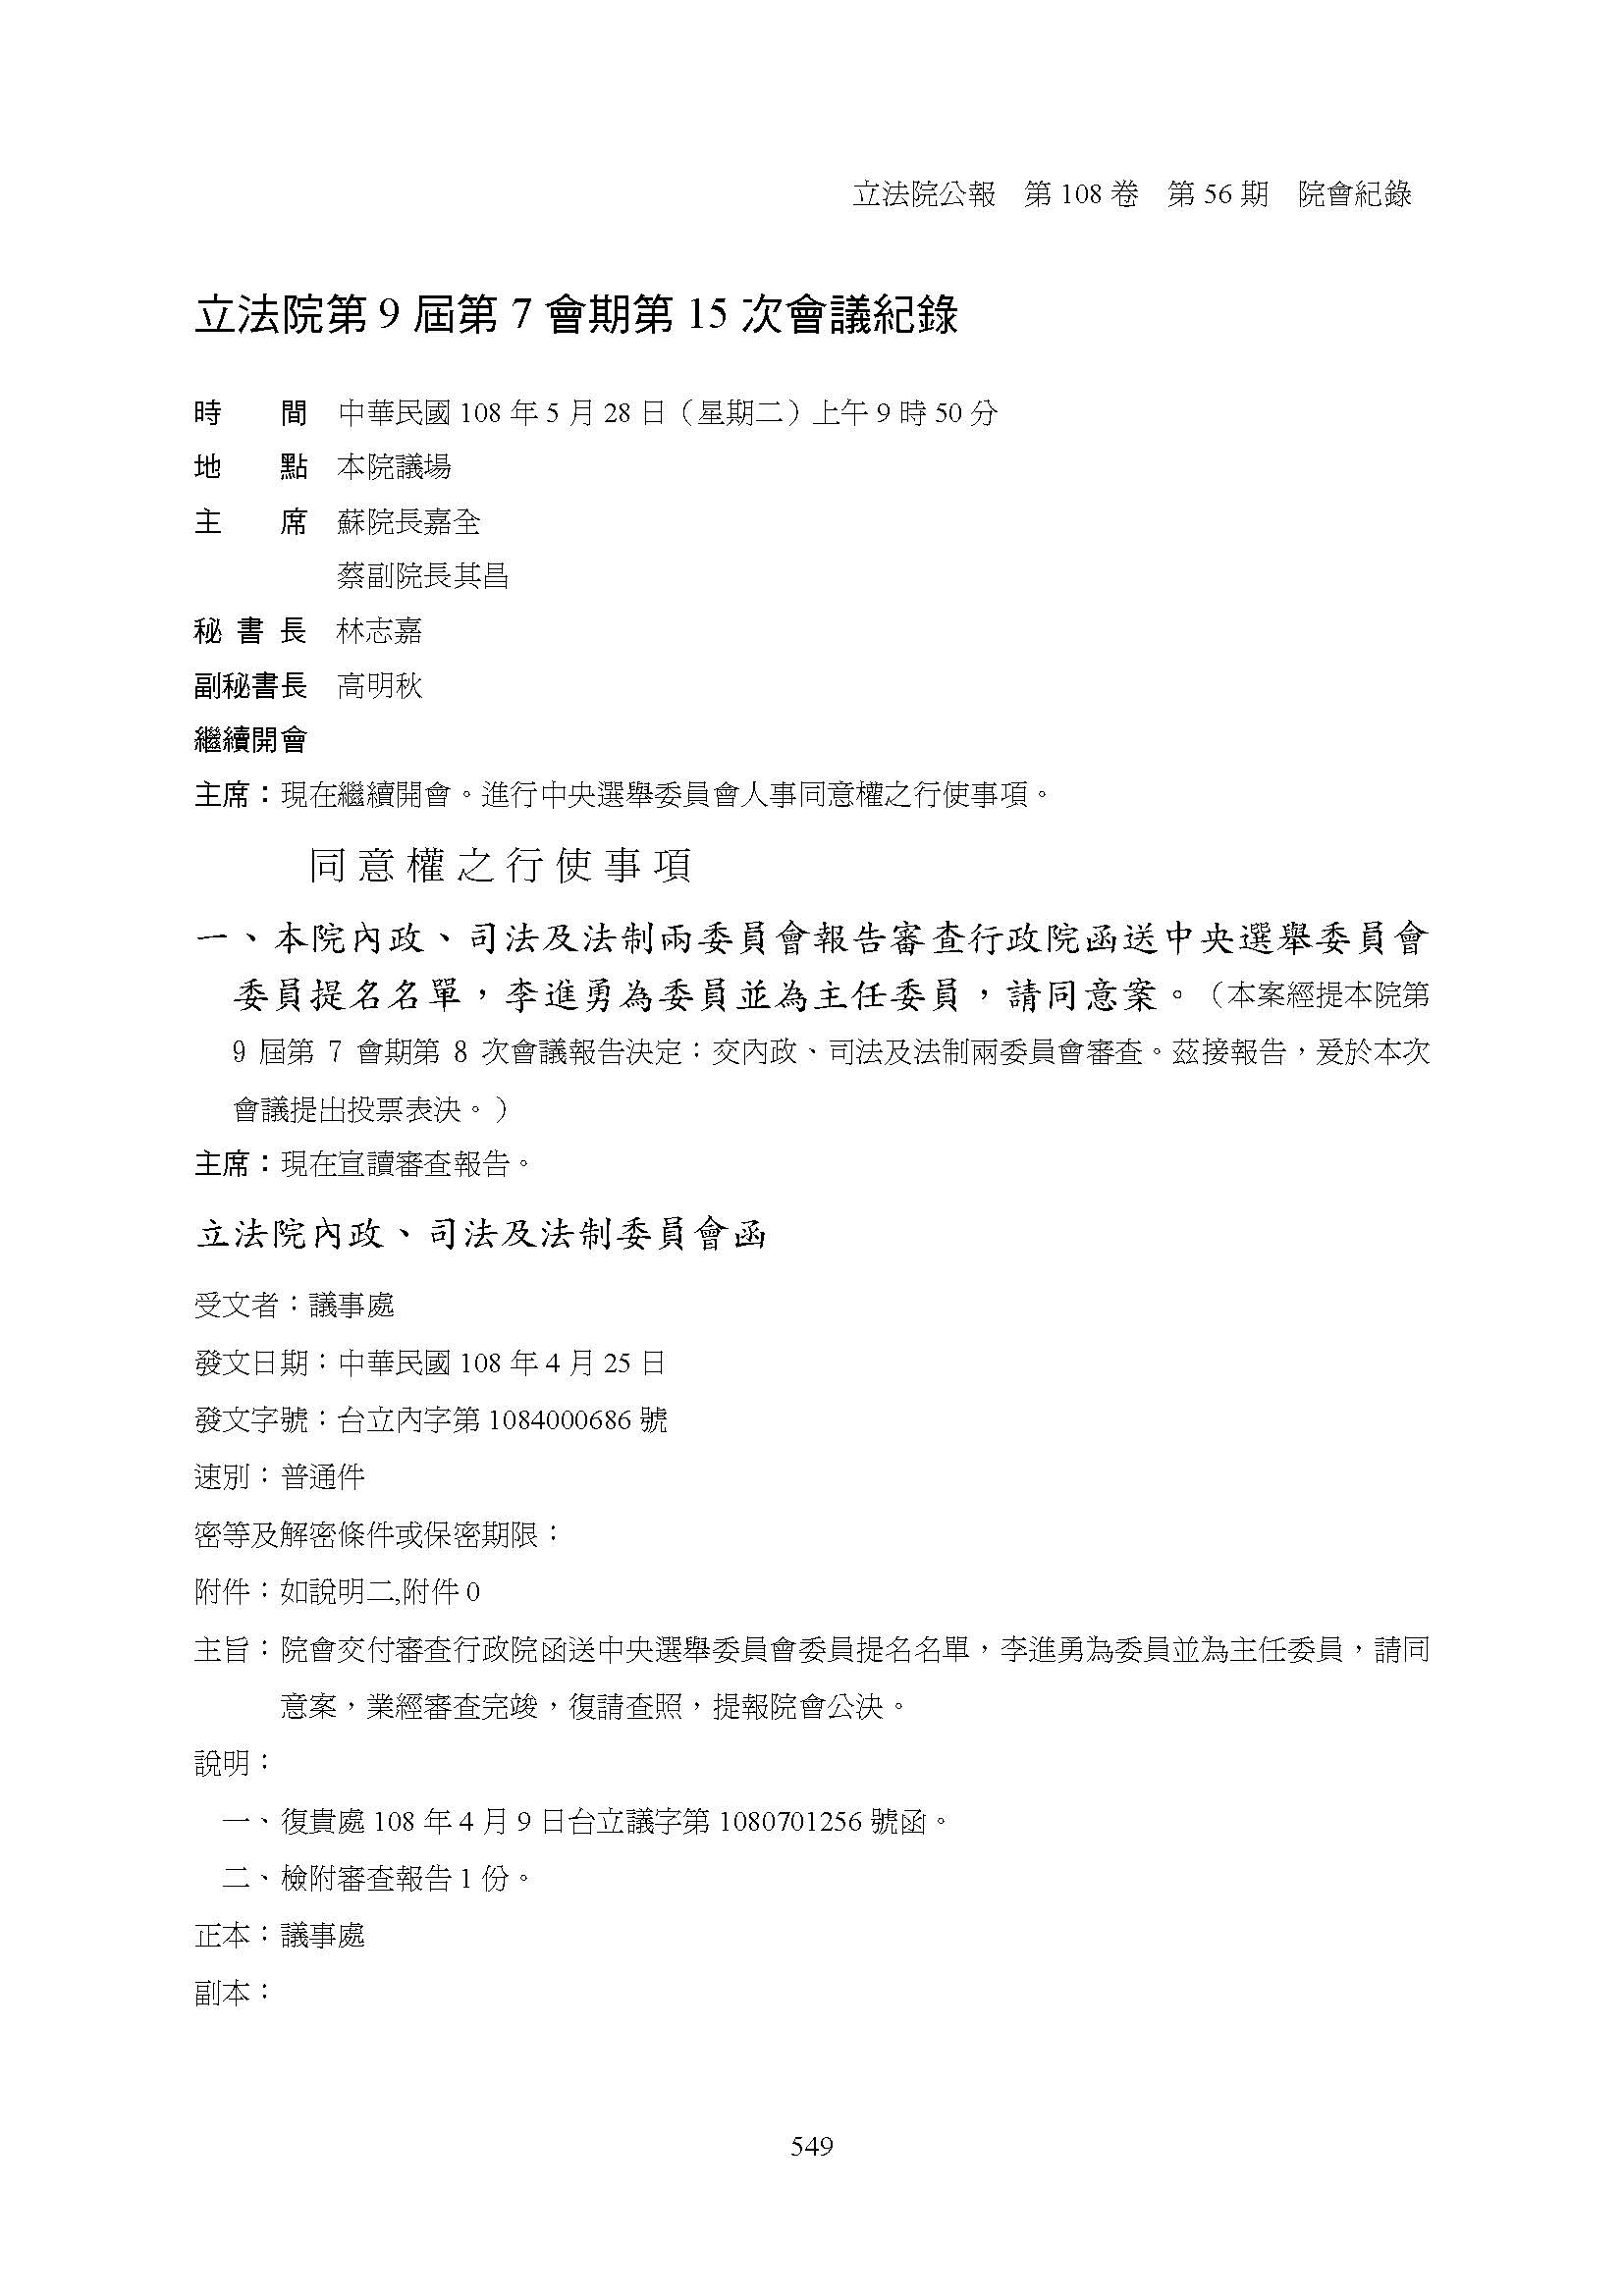 民國108年立法院行使中央選舉委員會委員同意權案封面照